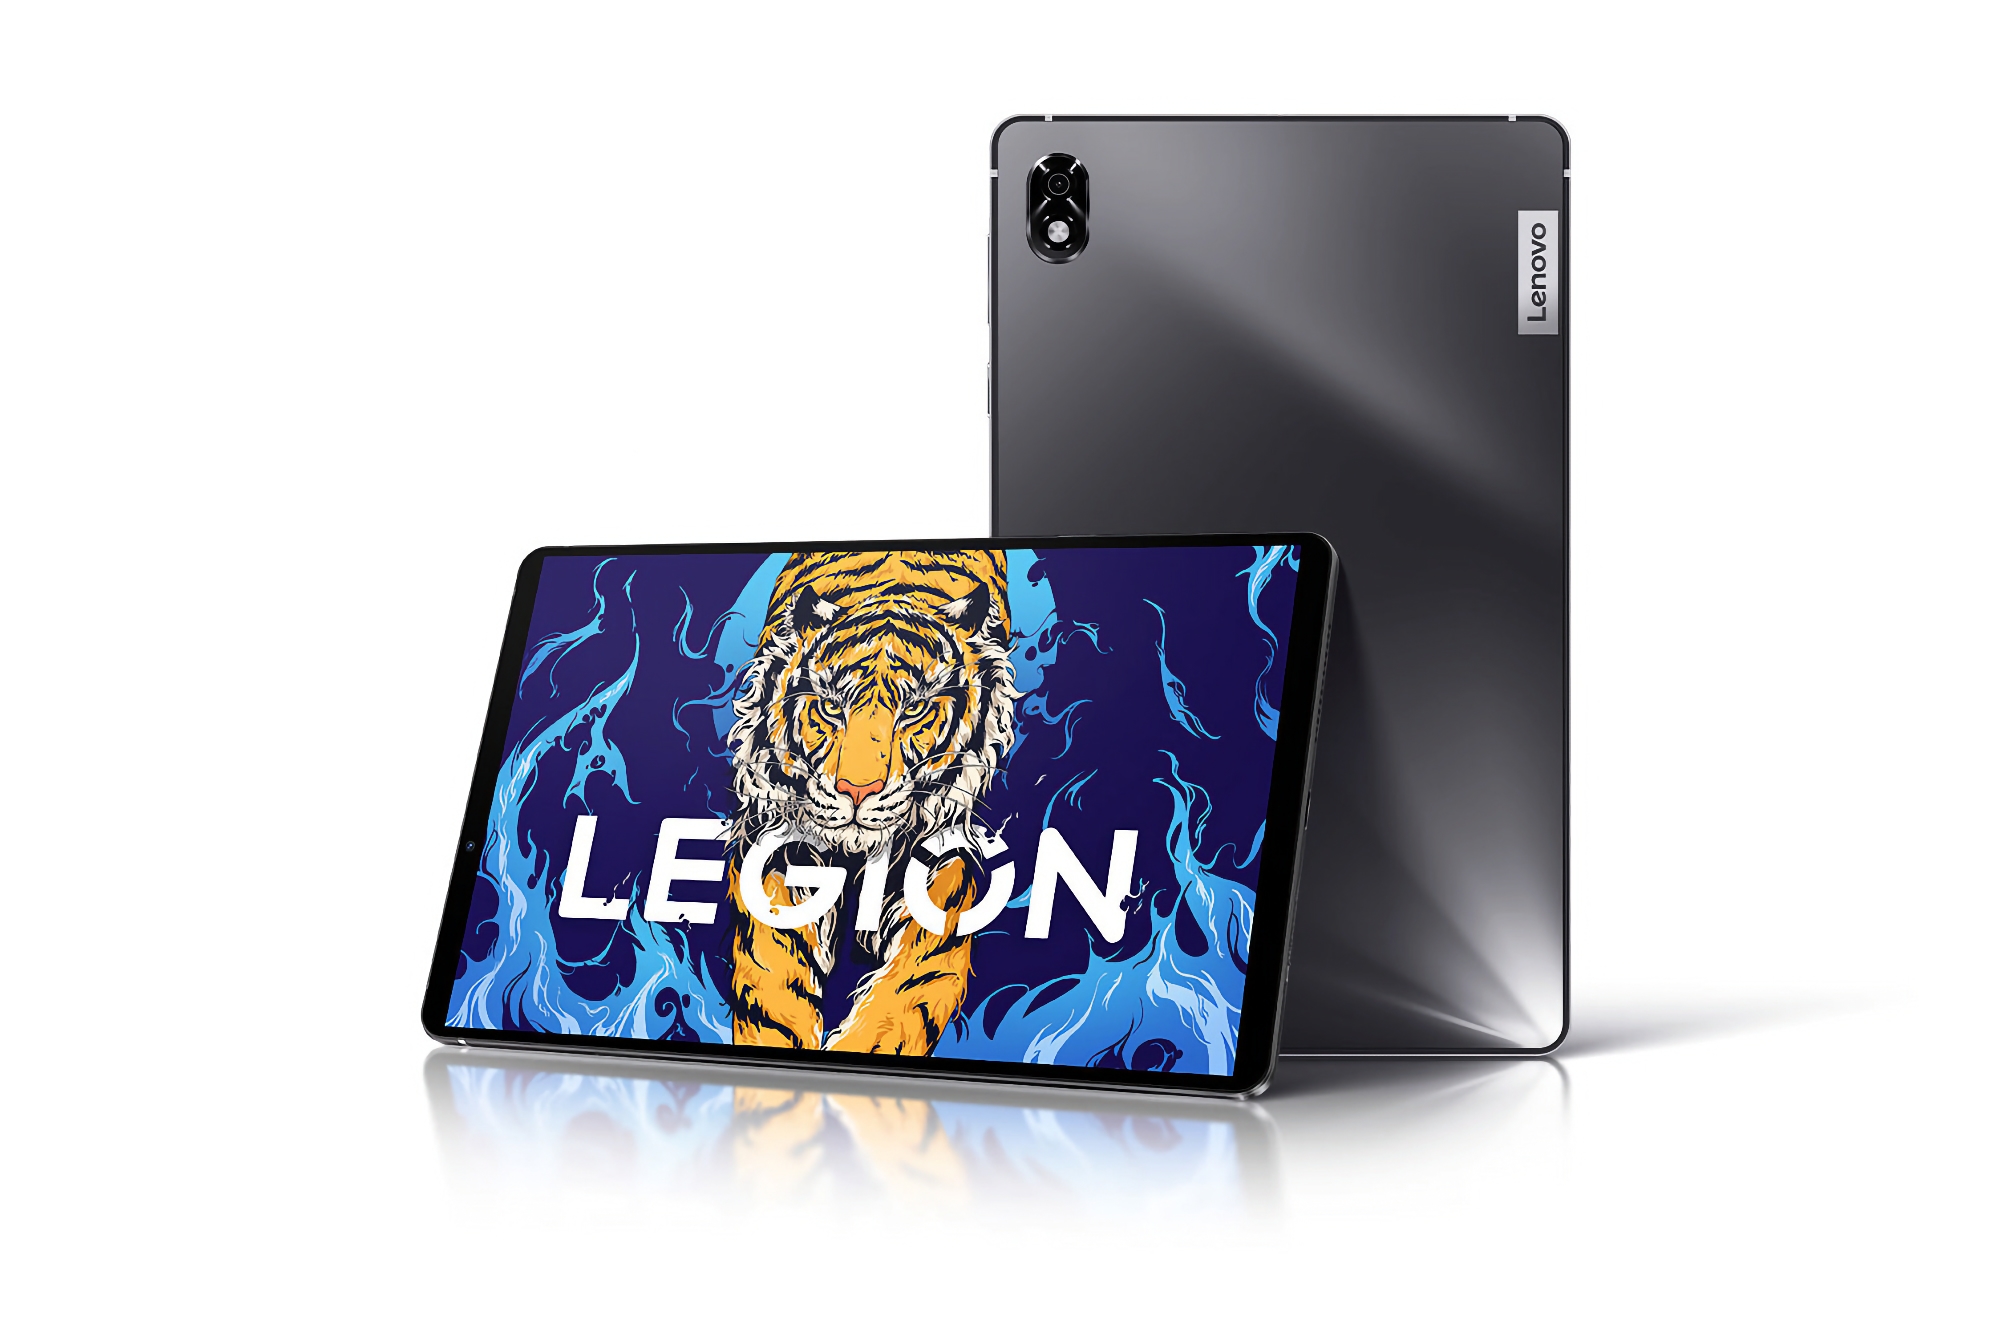 Gerücht: Lenovo Legion Y700 Gaming-Tablet mit 120Hz-Bildschirm, Snapdragon 870-Chip und 45W-Ladung wird außerhalb von China veröffentlicht